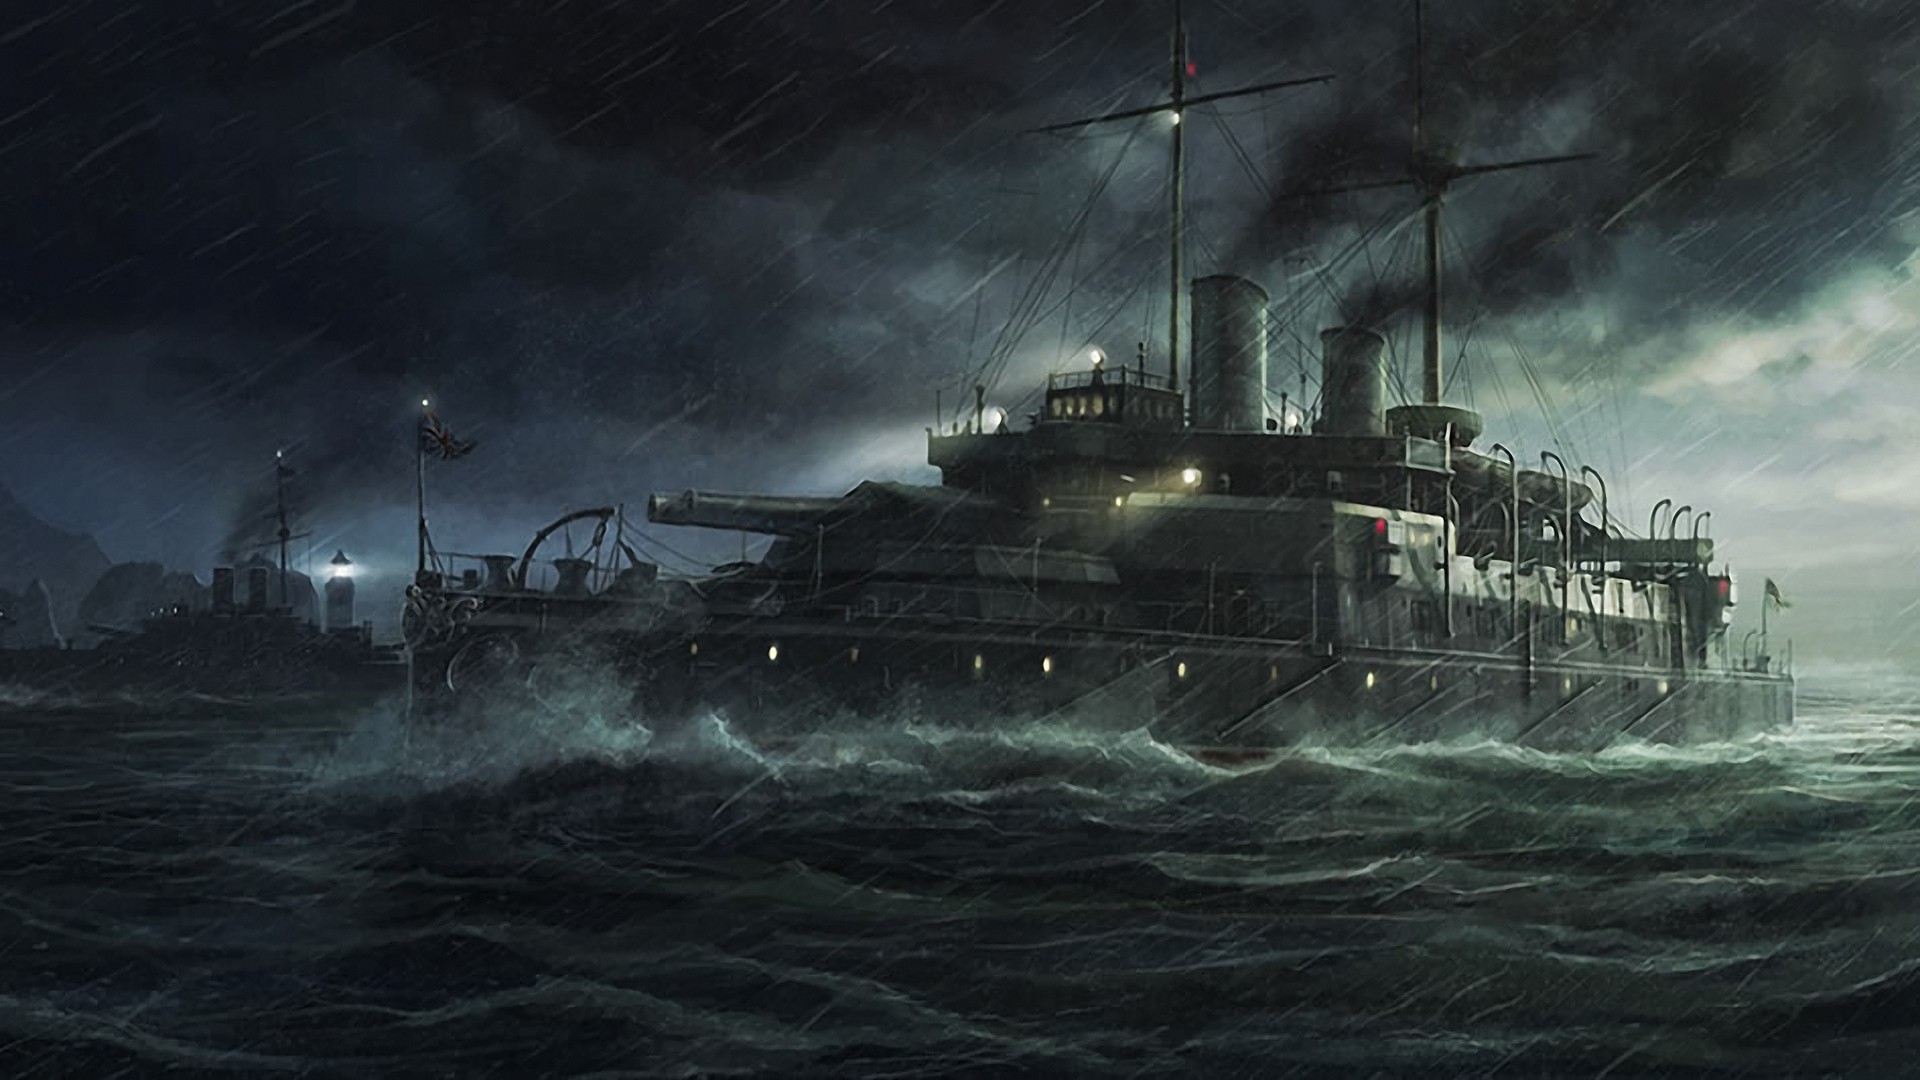 War Ship Best Desktop Images wallpaper | man made | Wallpaper Better